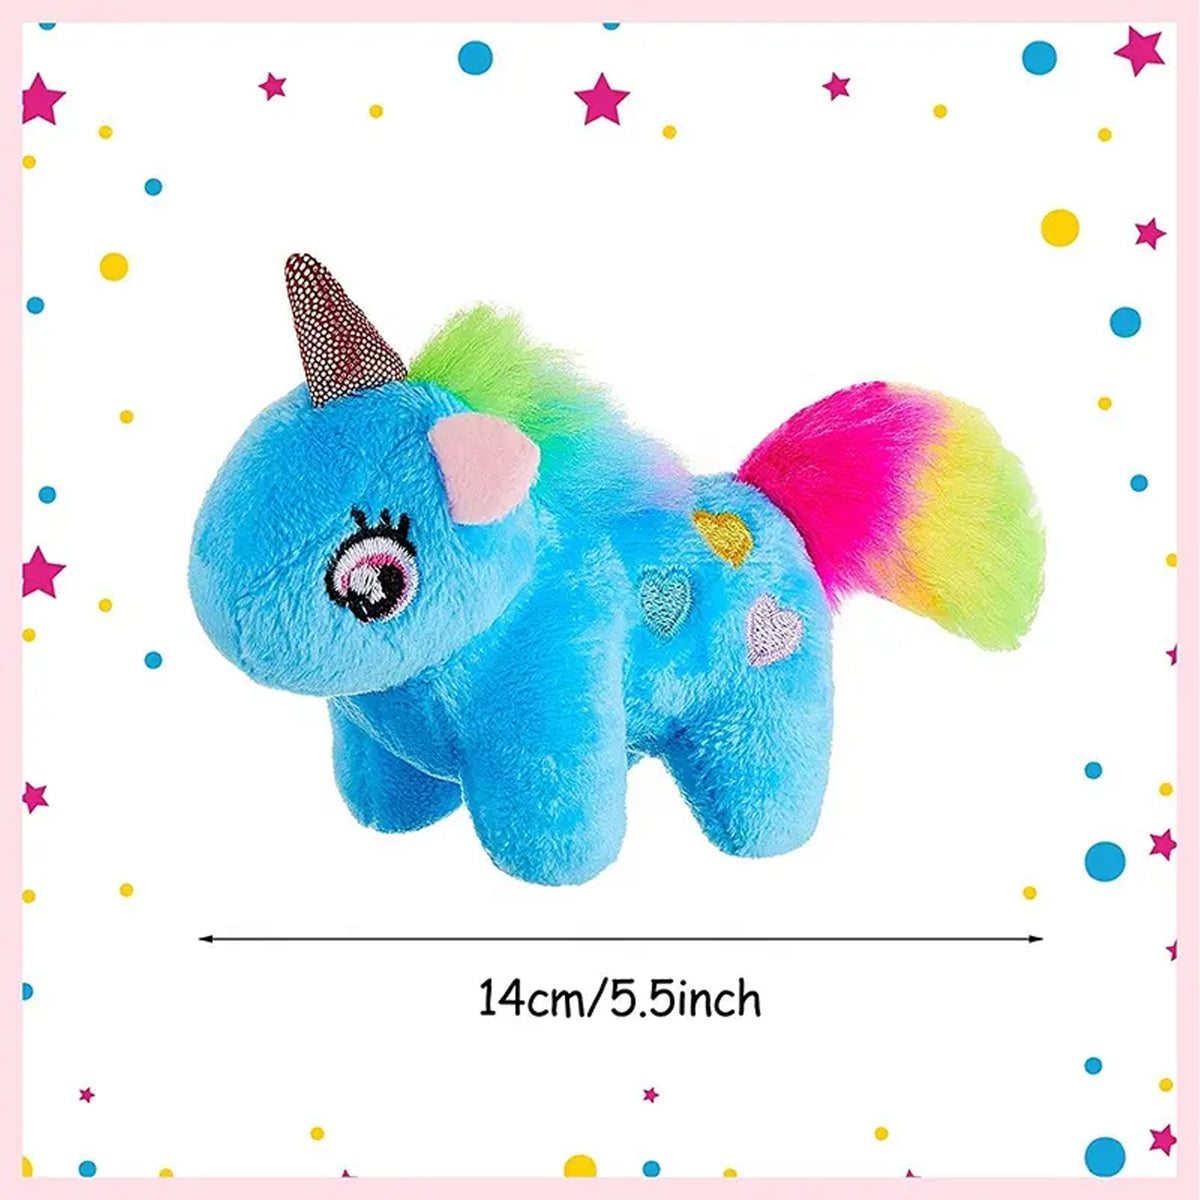 Fuzzy Plush Stuffed Unicorn Keychain